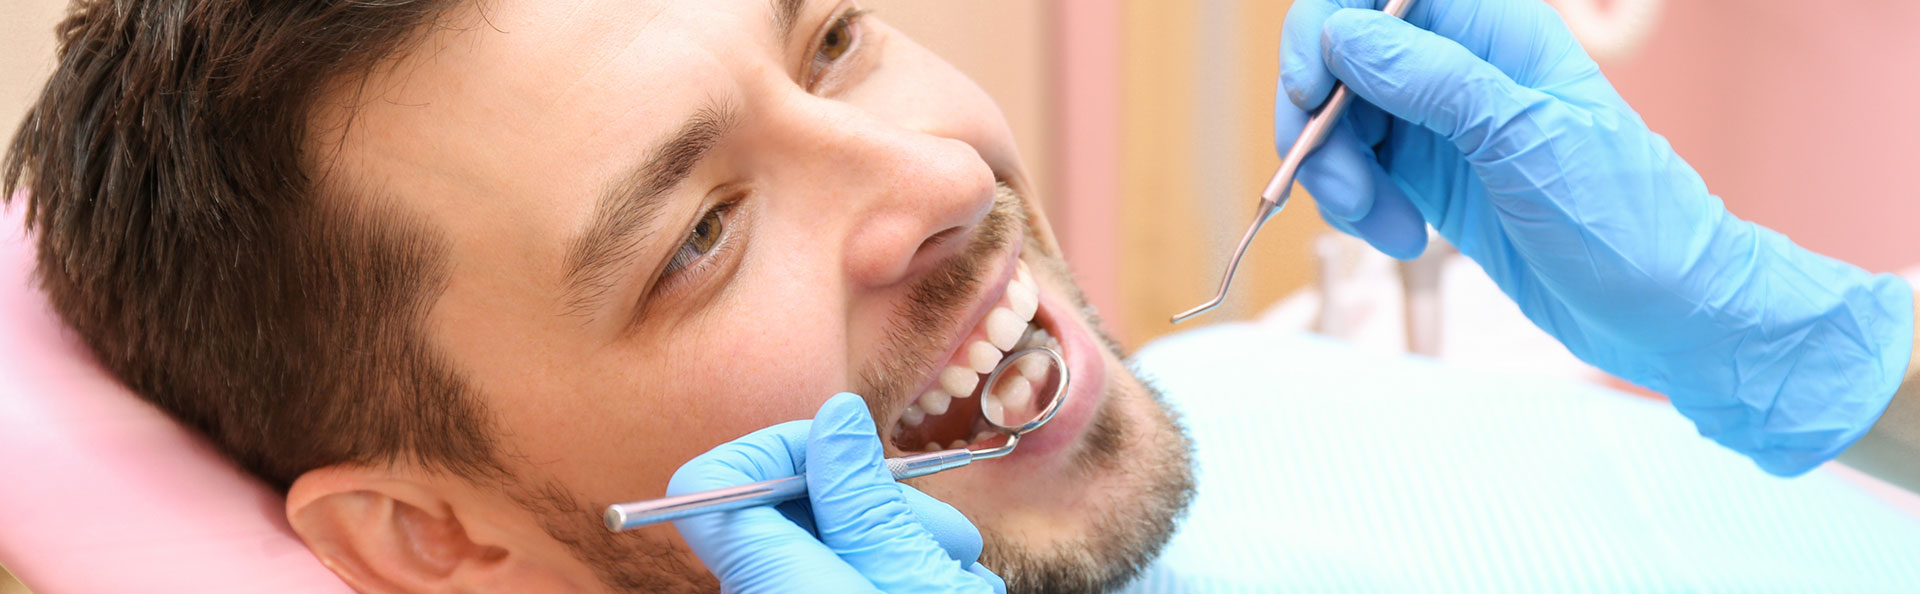 Man having dental exam and teeth cleanings